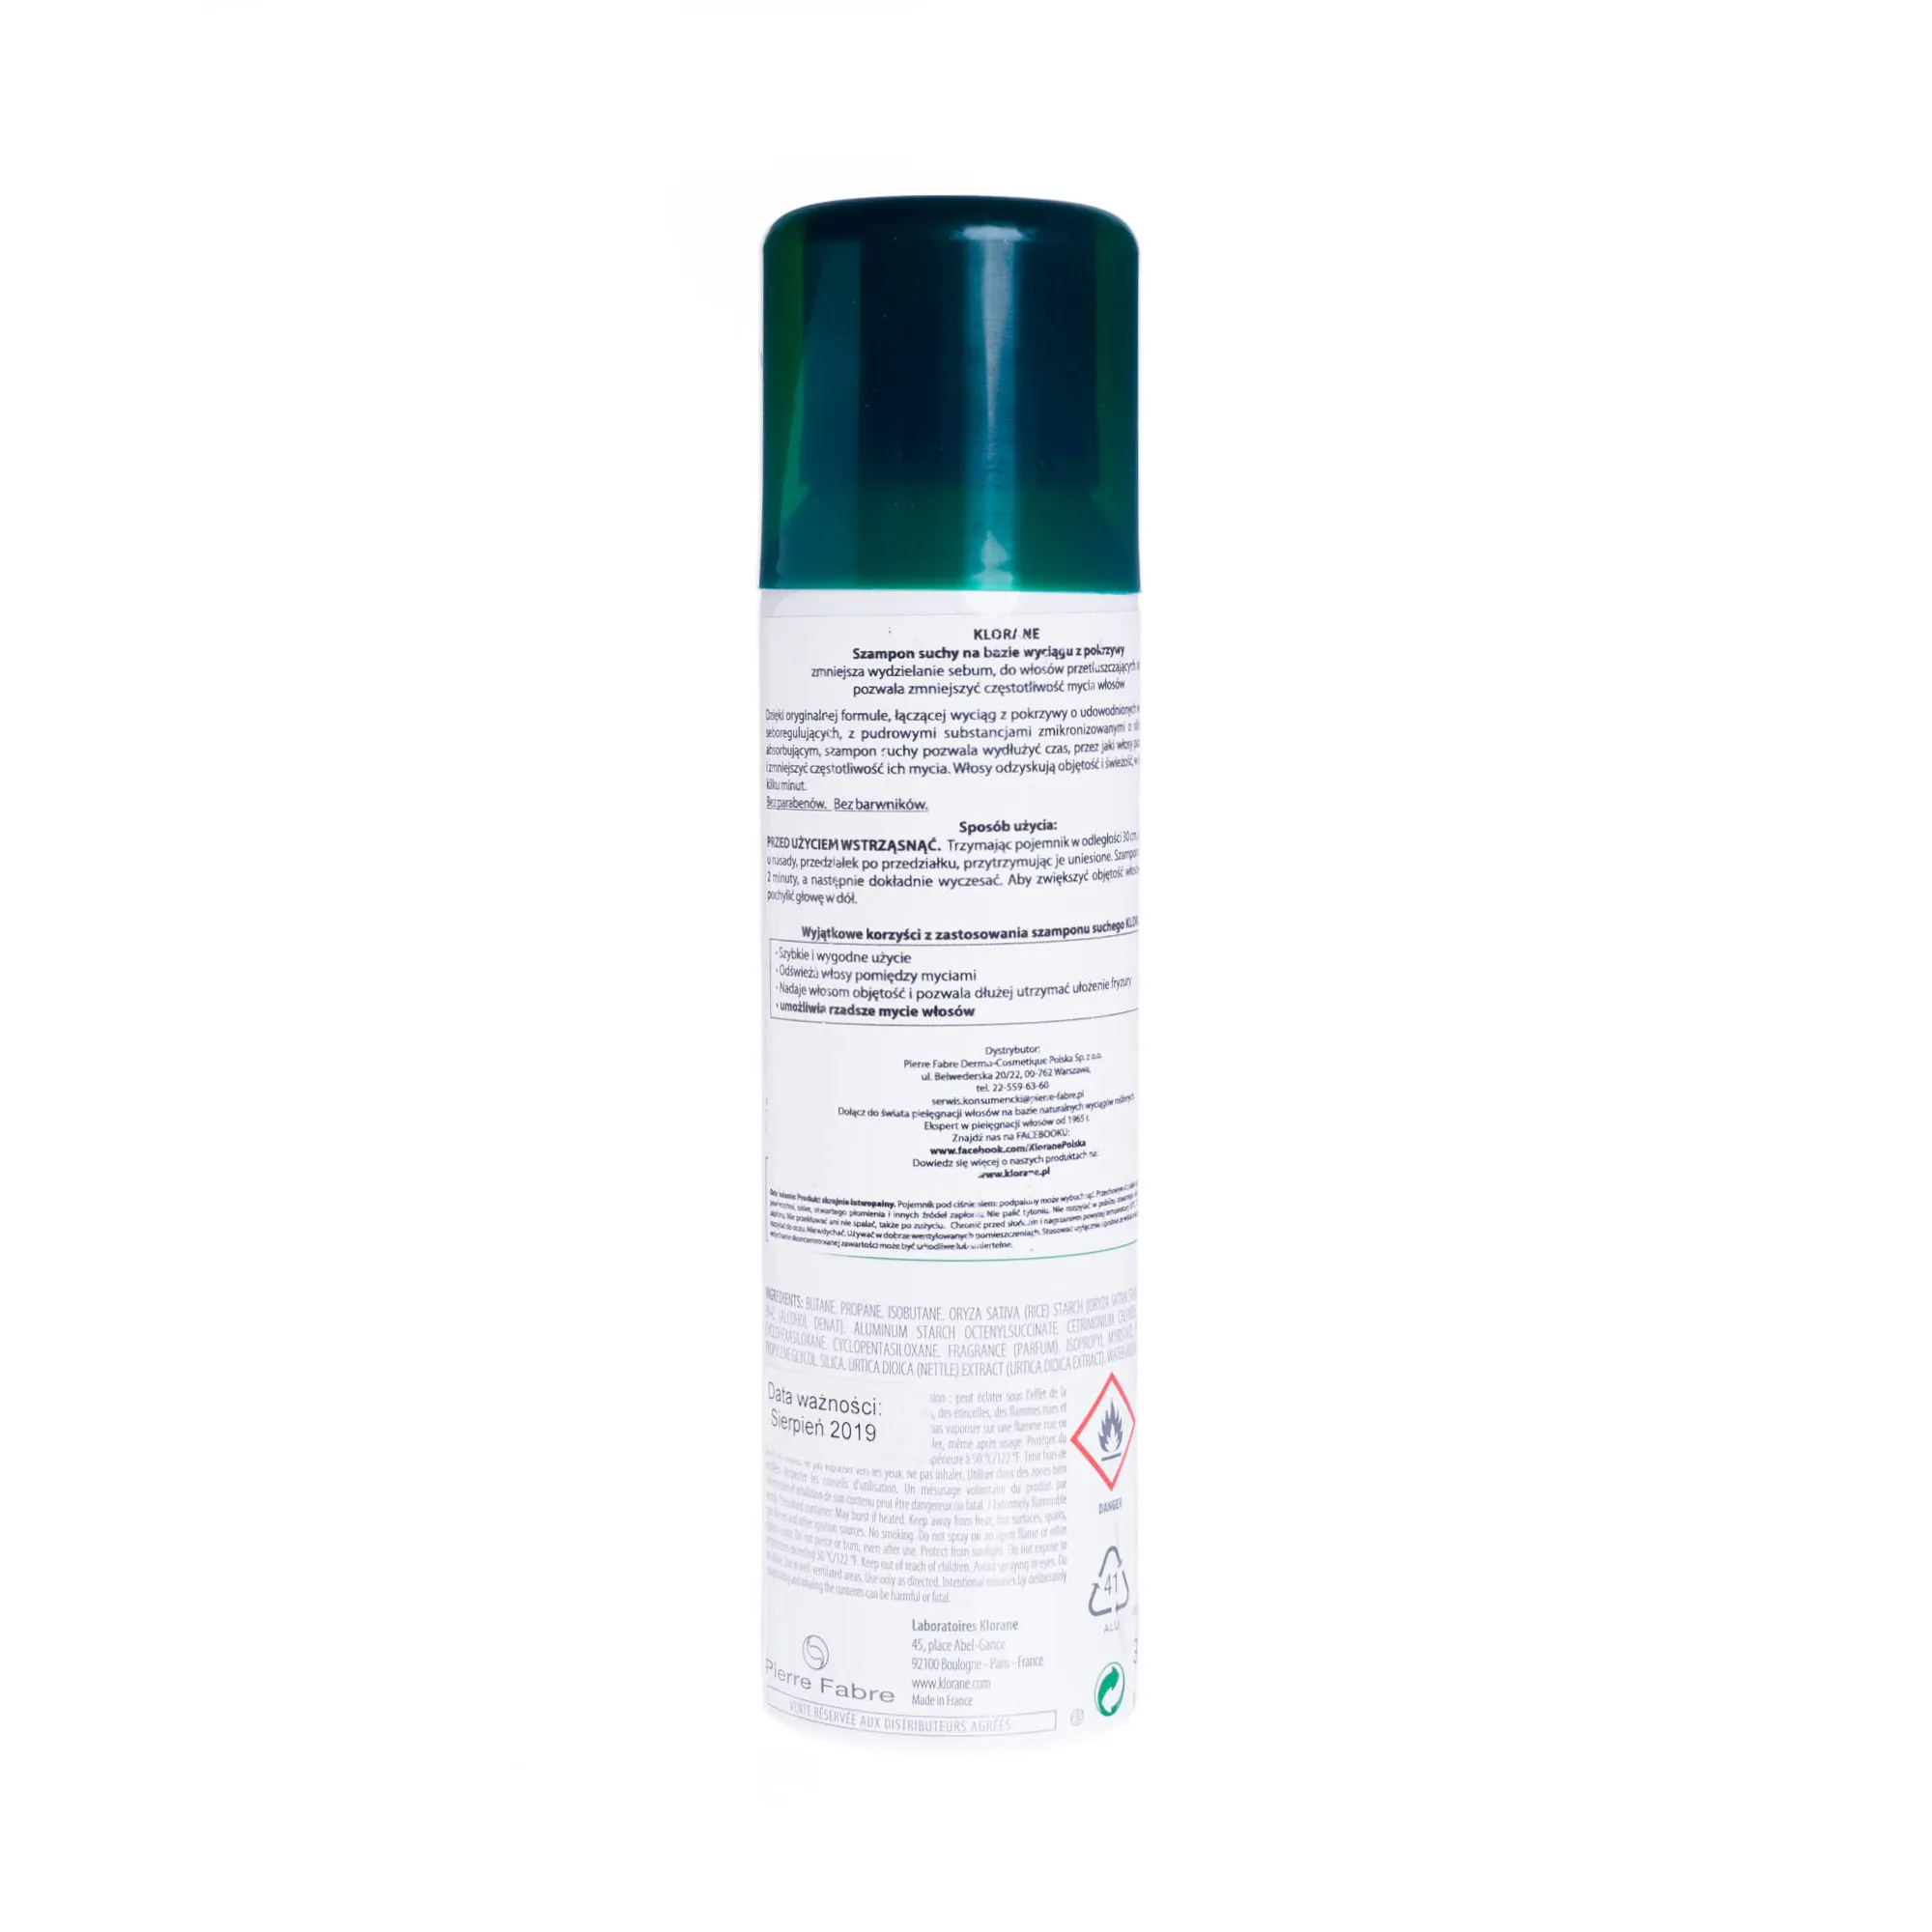 Klorane szampon suchy na bazie wyciągu z pokrzywy, 150 ml 